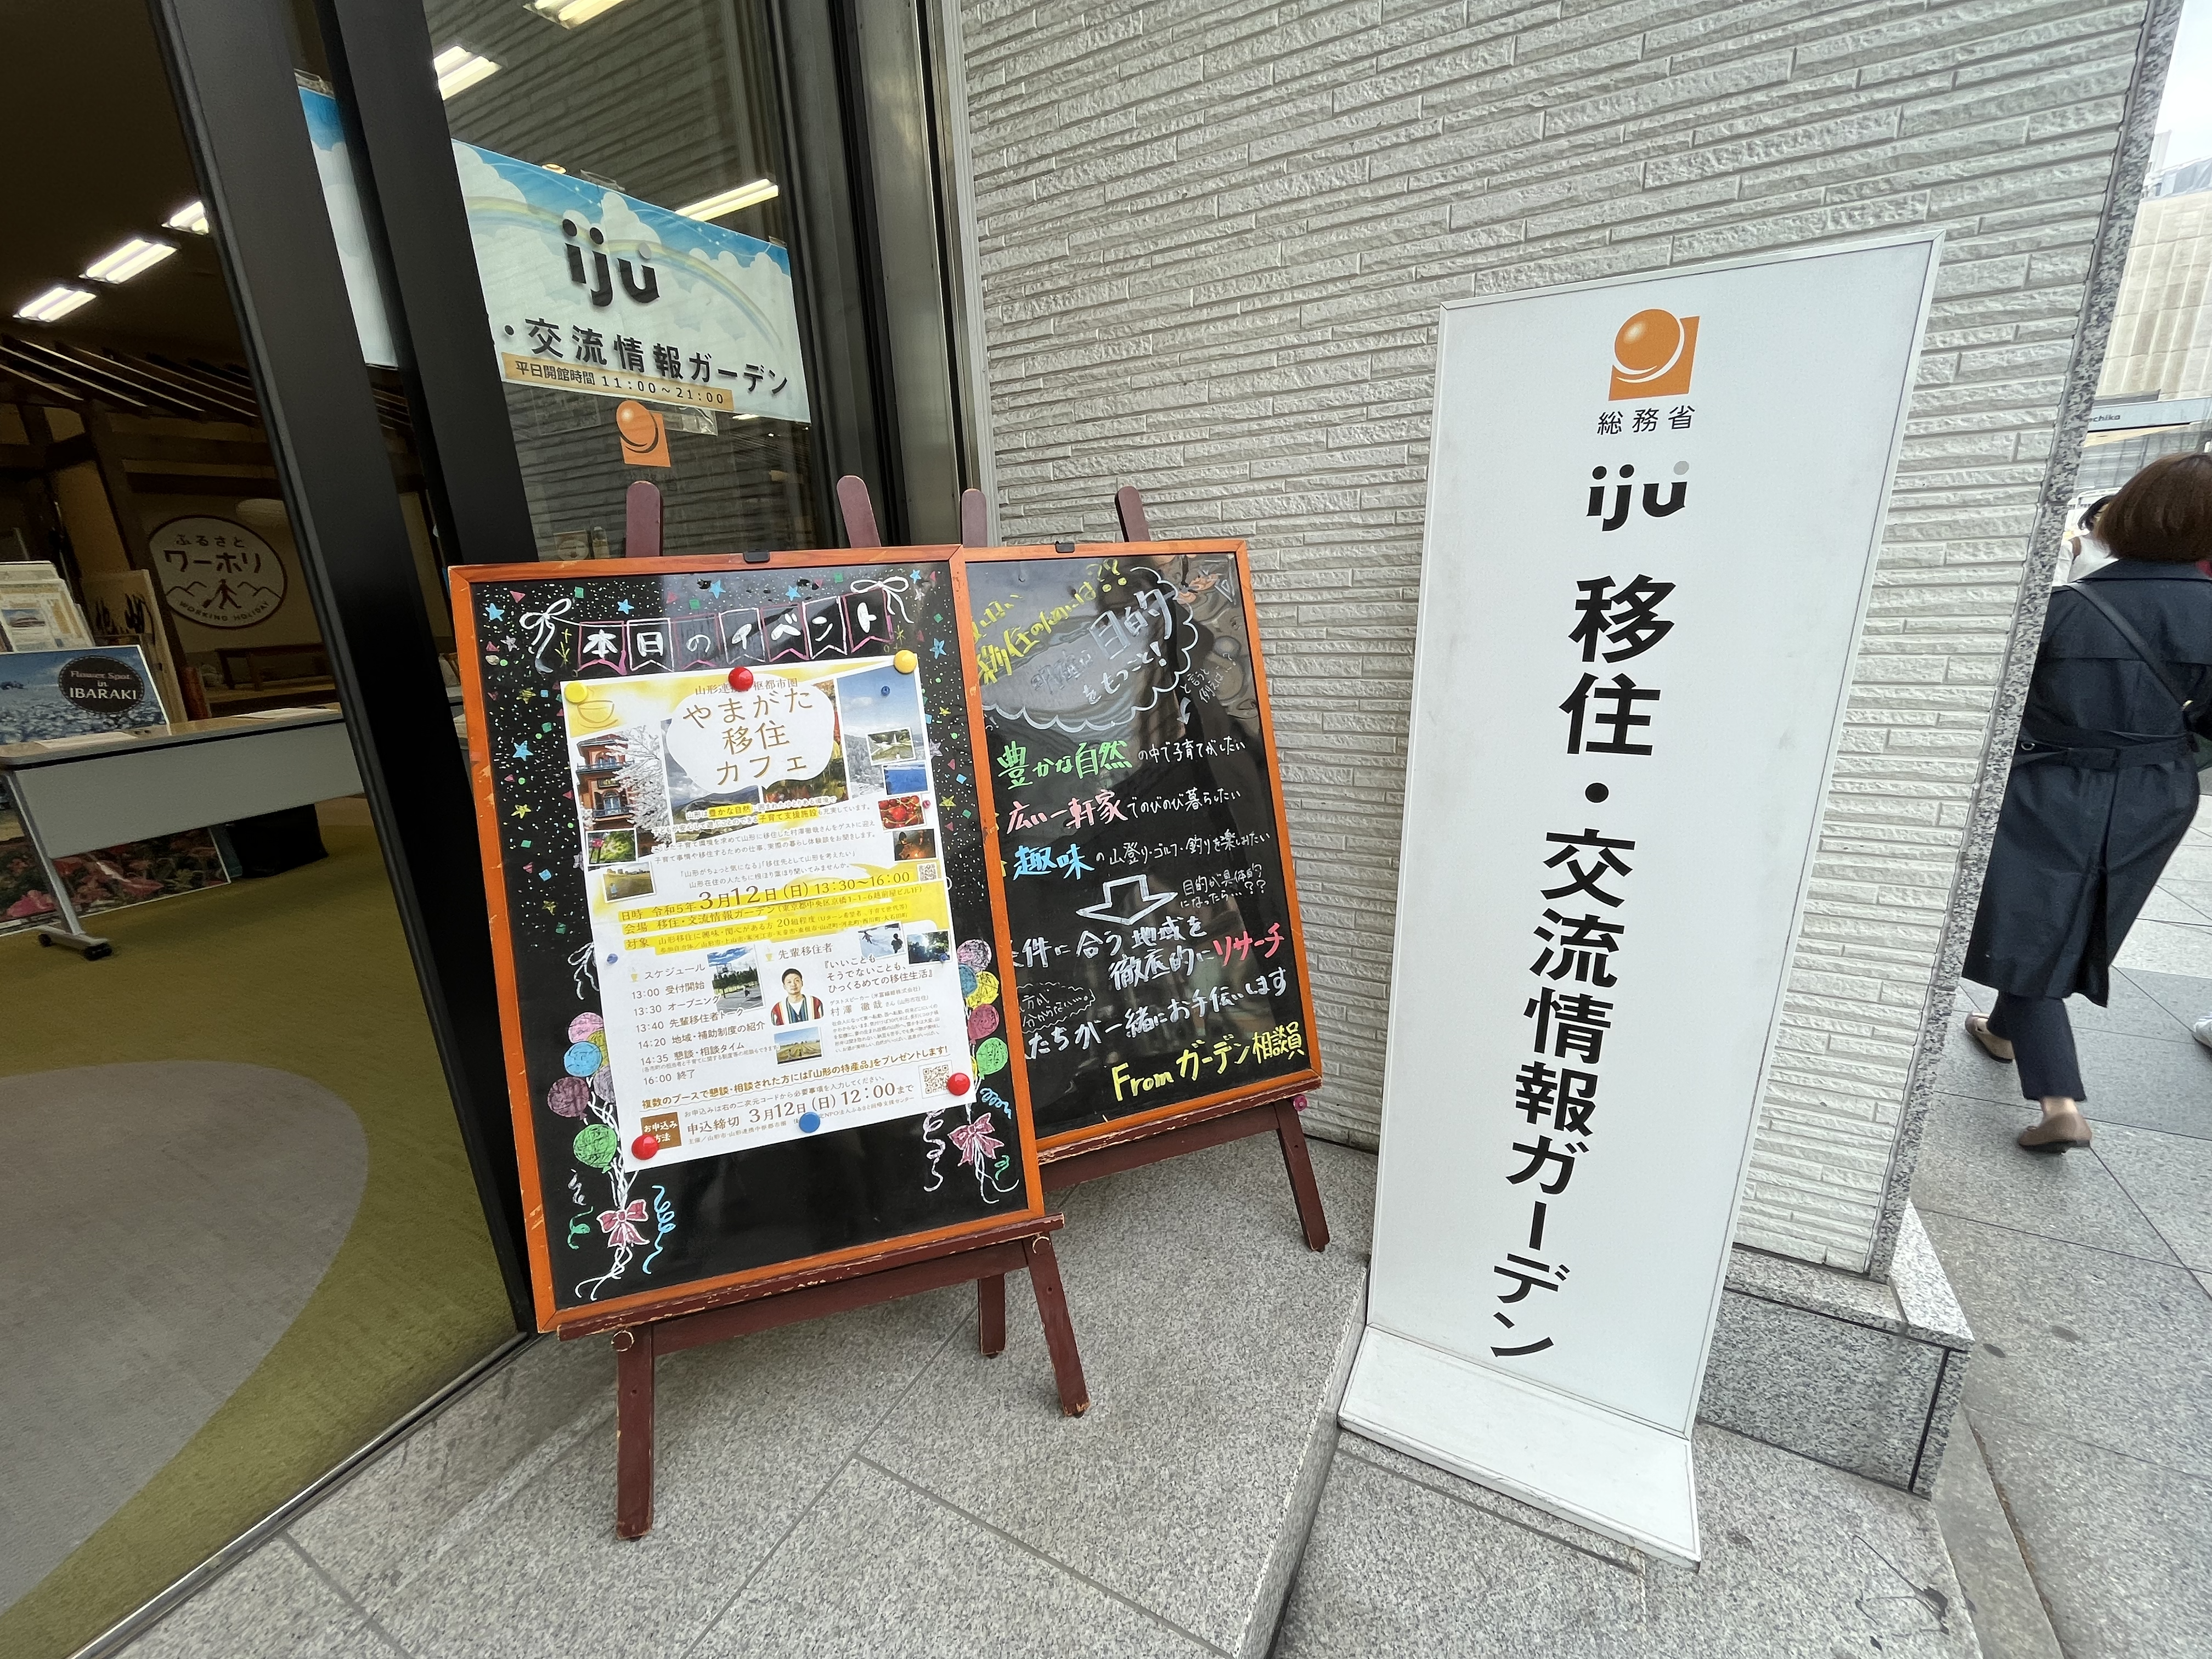 【イベントレポート】『子育て移住先輩がゲスト』やまがた移住カフェ@東京 移住・交流情報ガーデンを開催しました